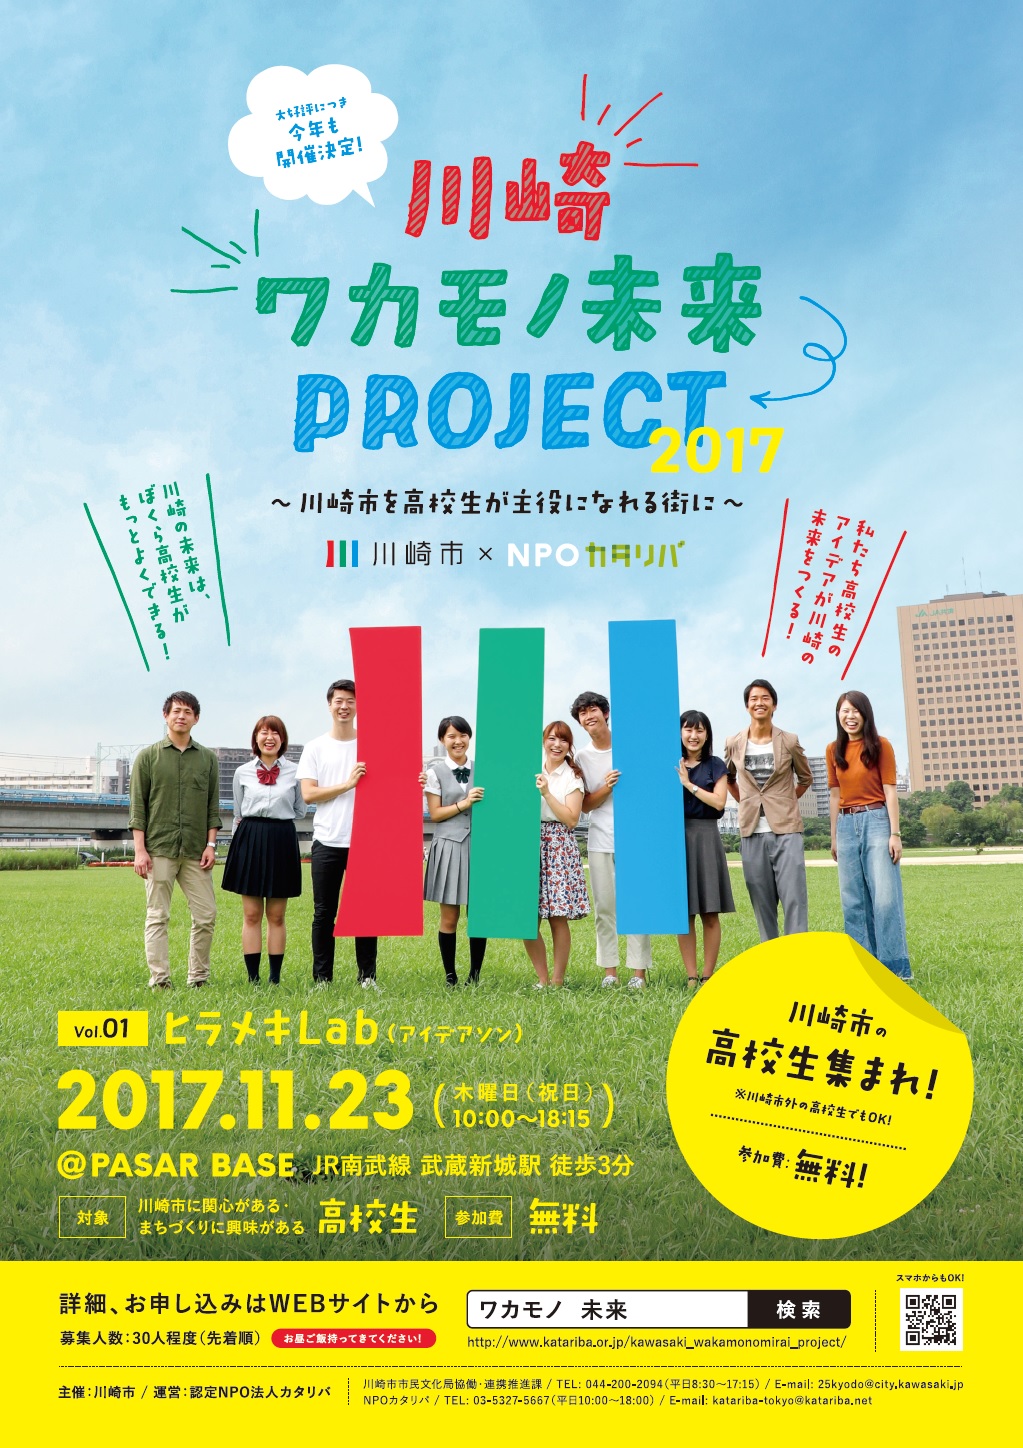 期間終了 関東でのマイプロスタートアップ 川崎ワカモノ未来project17 News マイプロジェクト